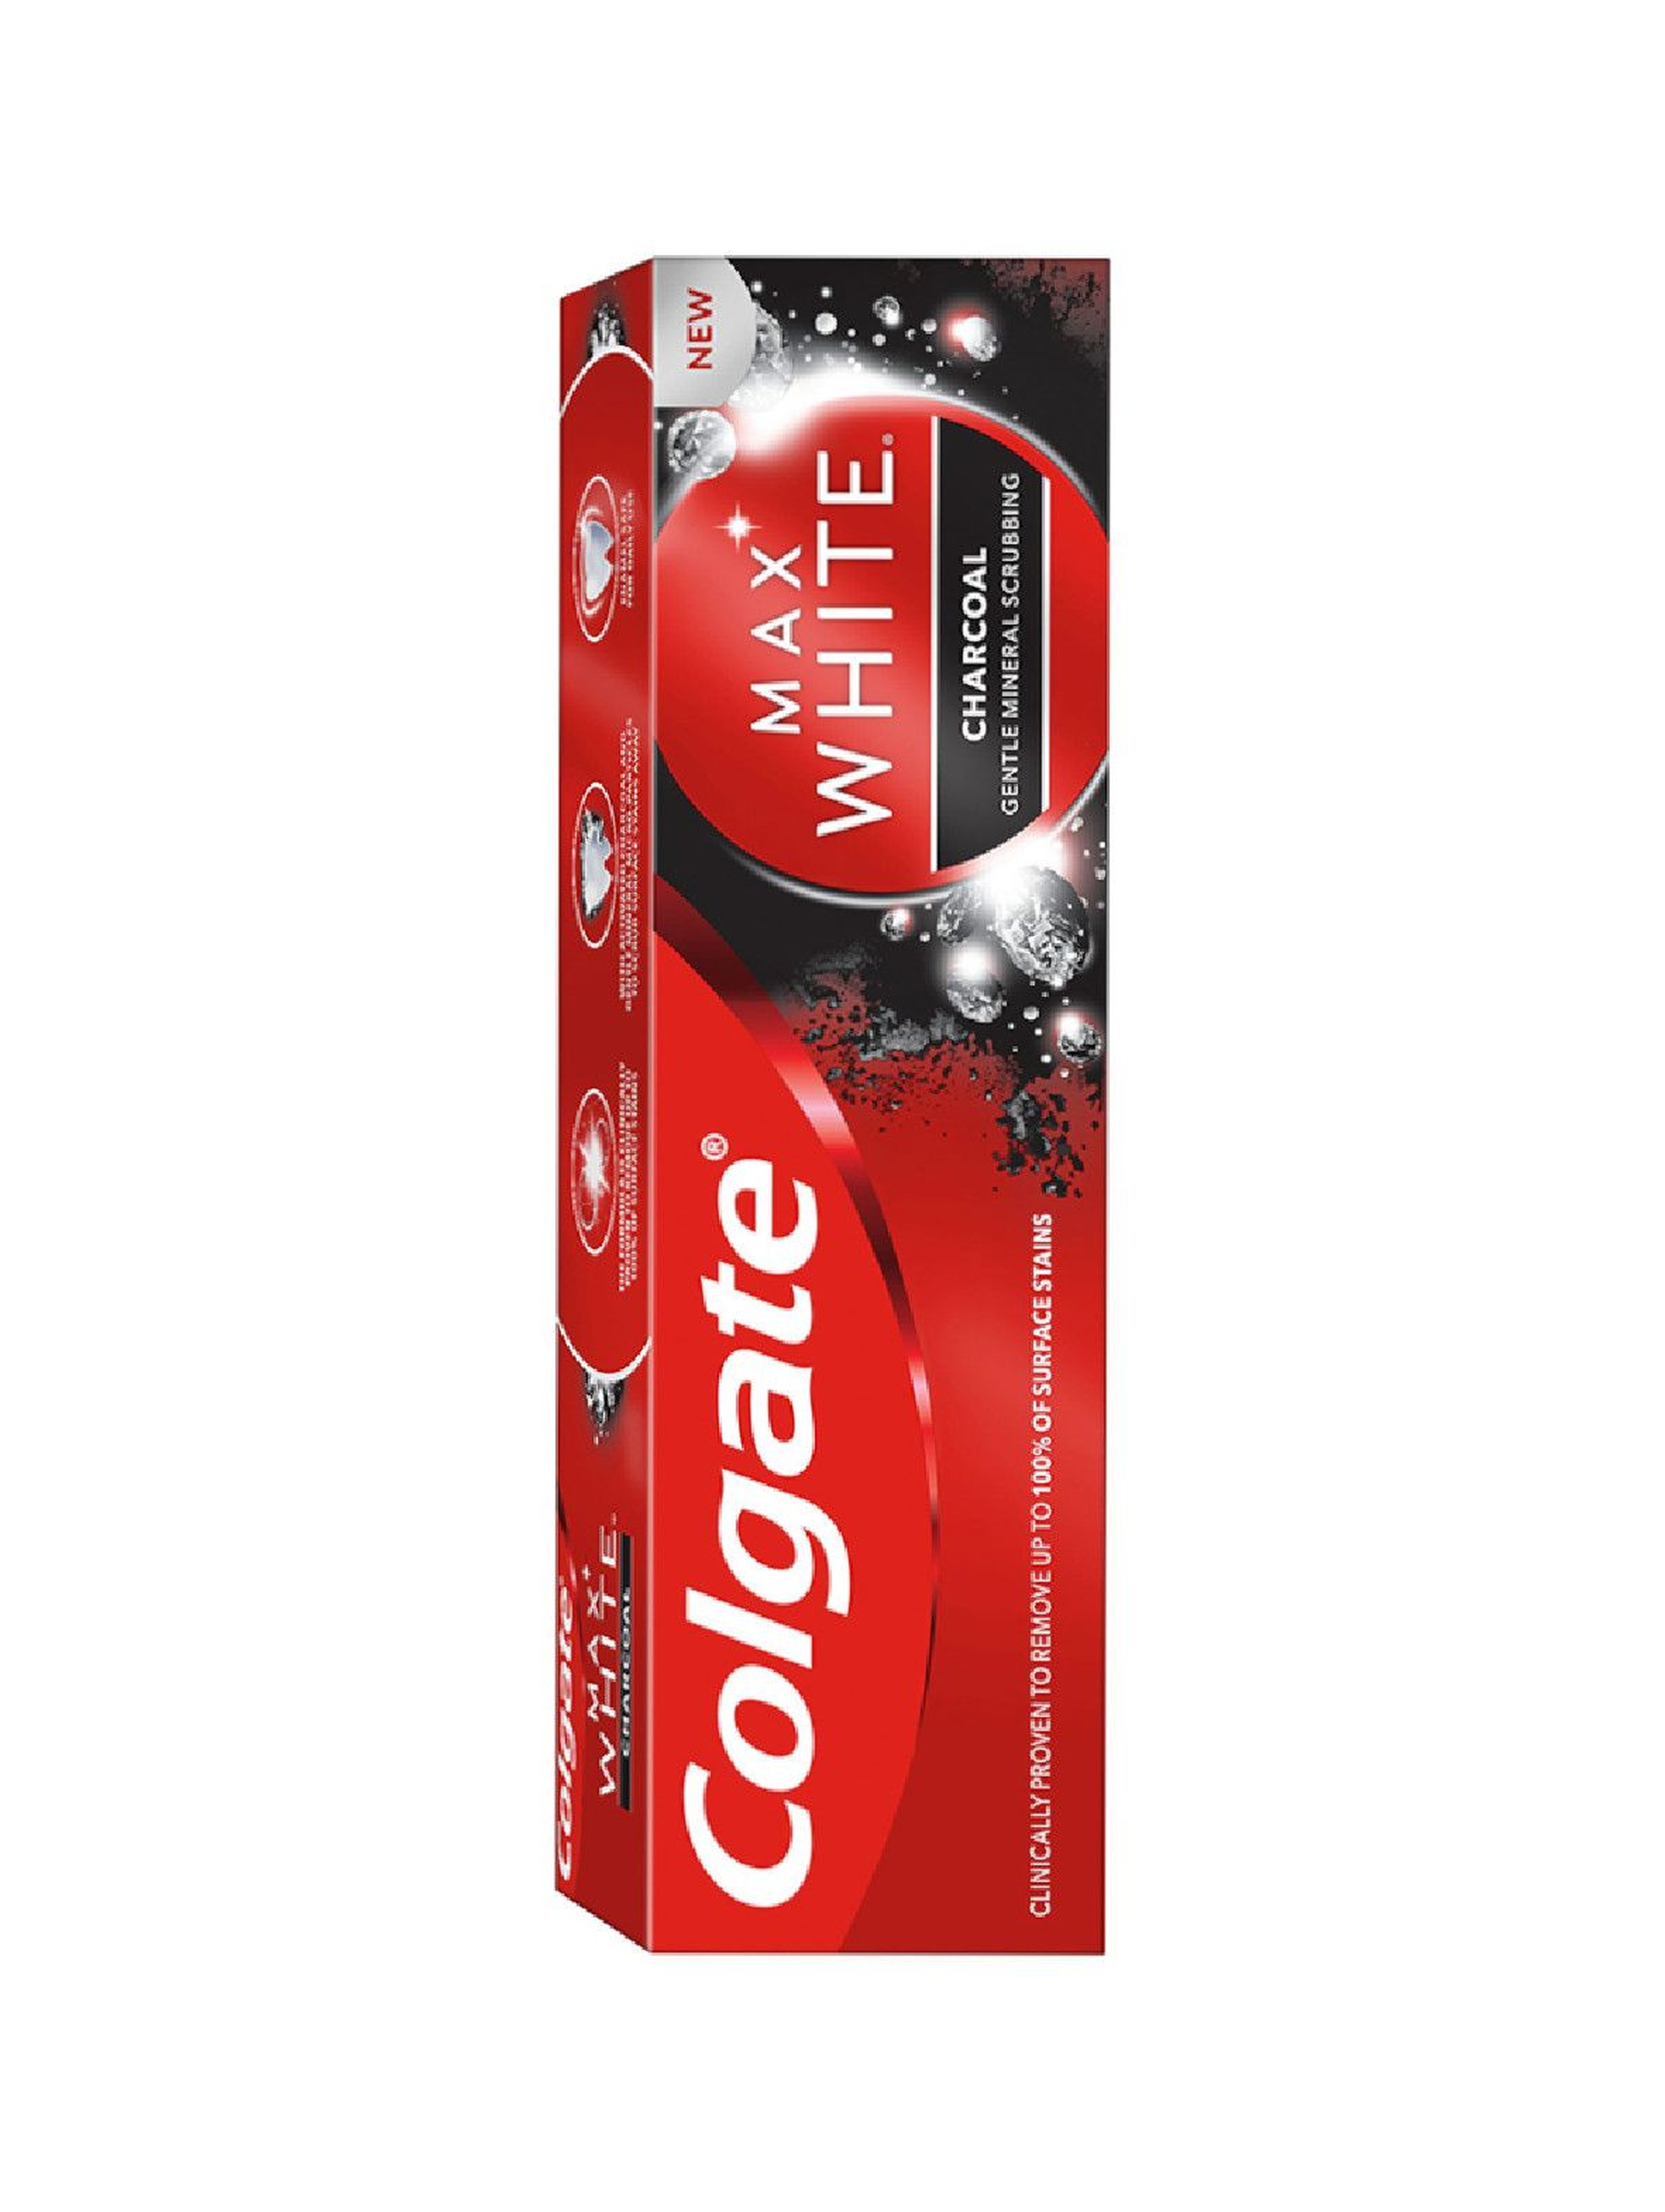 Colgate Max White Charcoal Wybielająca pasta do zębów z aktywnym węglem 75ml